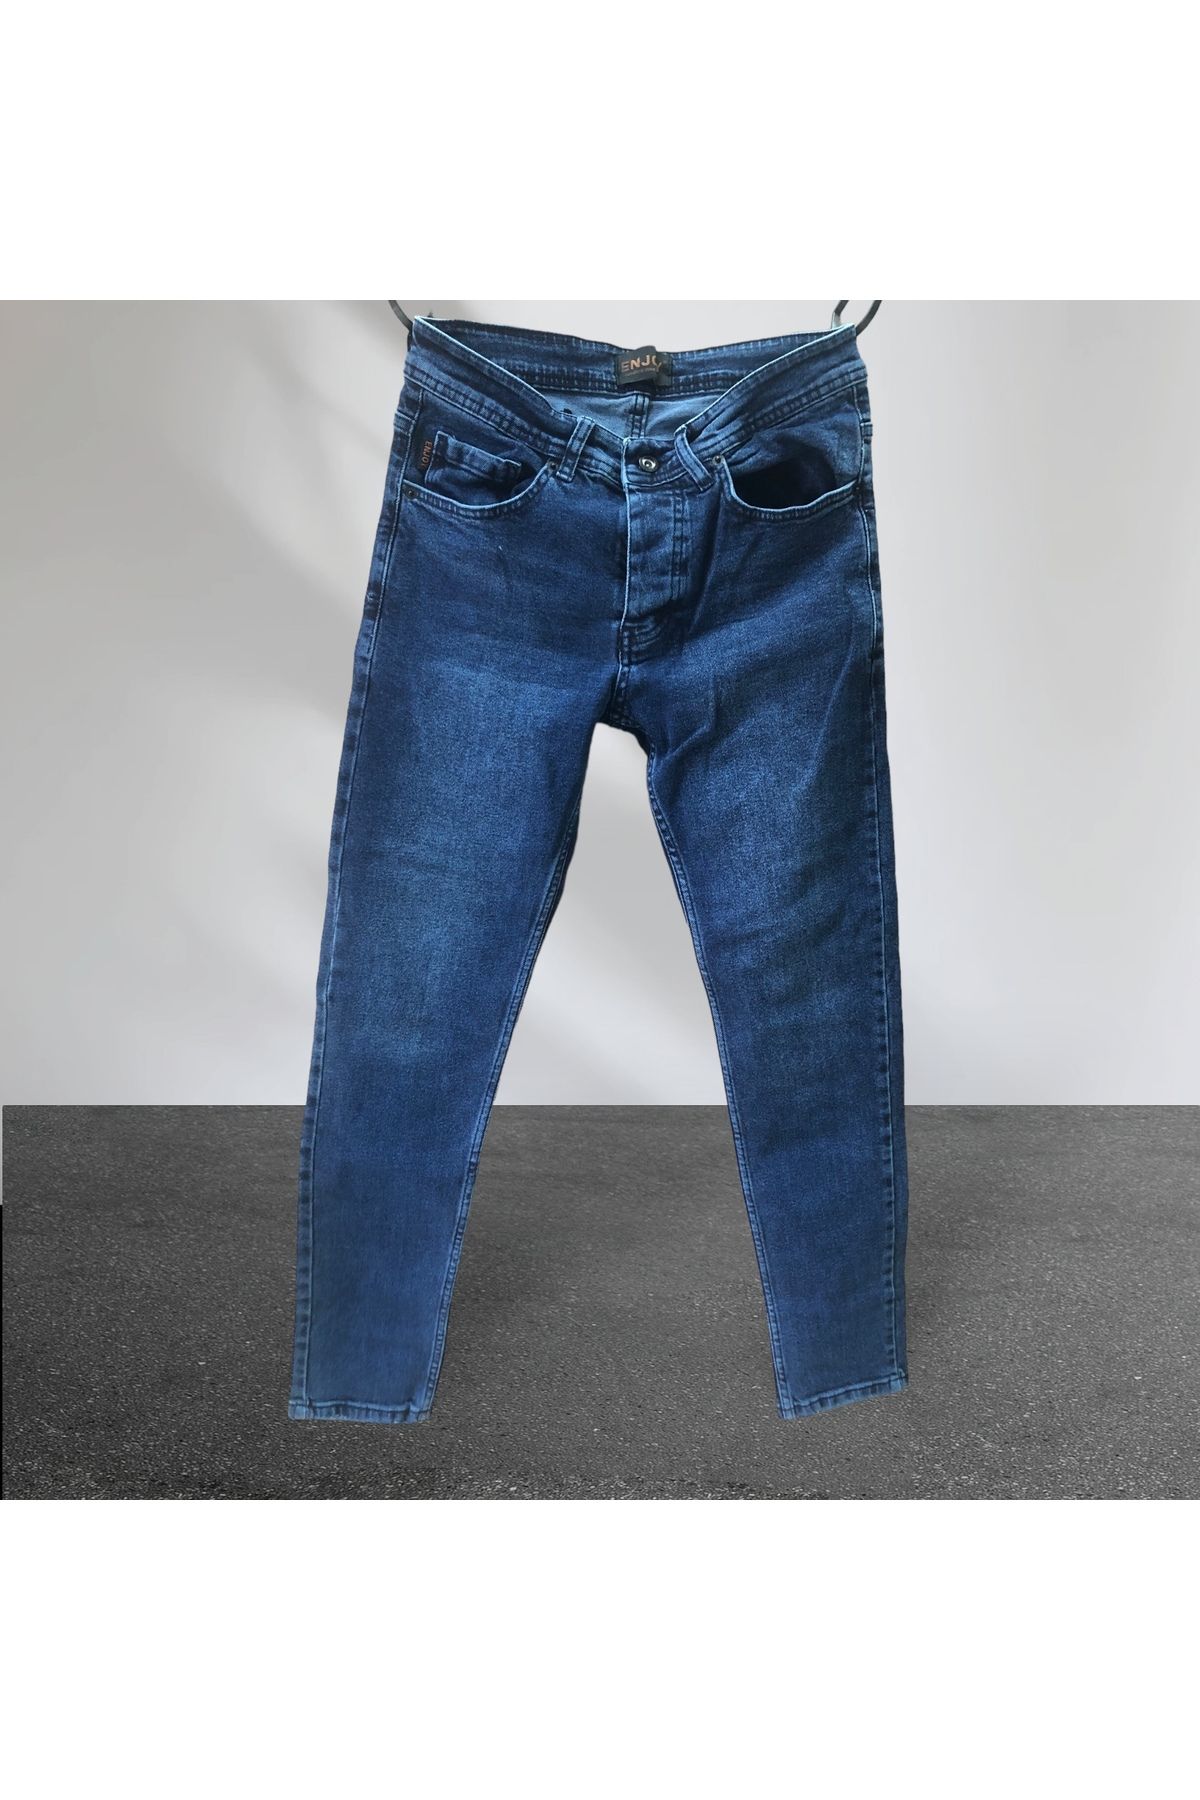 Enjoy Kot-Jeans-Taşlanmış-Slim Fit-Ligralı-Düğmeli Pantolon